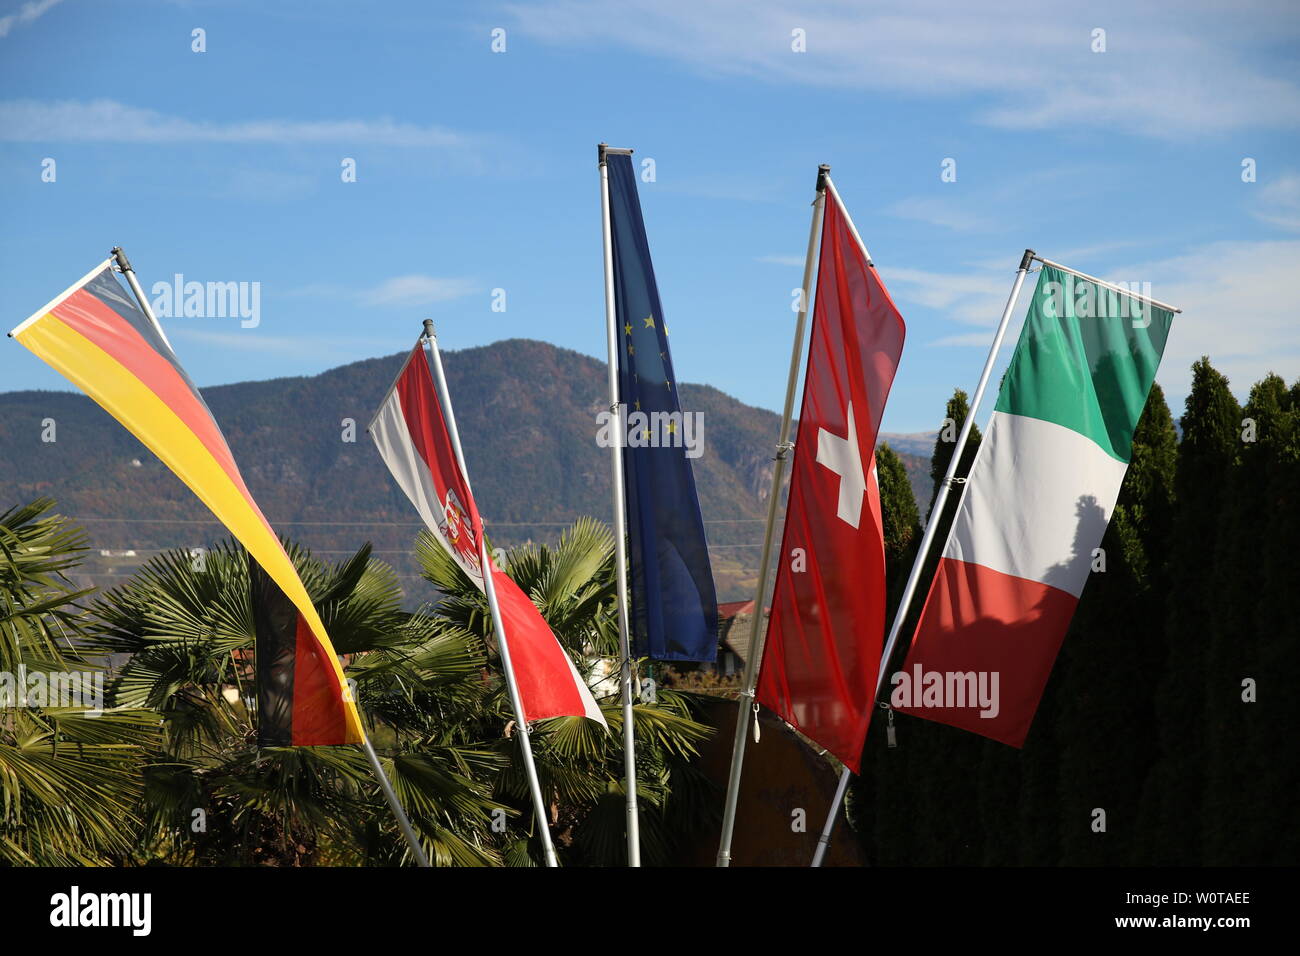 Internationales Flair vor dem Quartier 'Hotel Weinegg' in Eppan/Südtirol, DFB-WM-Trainingslager 2018 Suedtirol Stock Photo